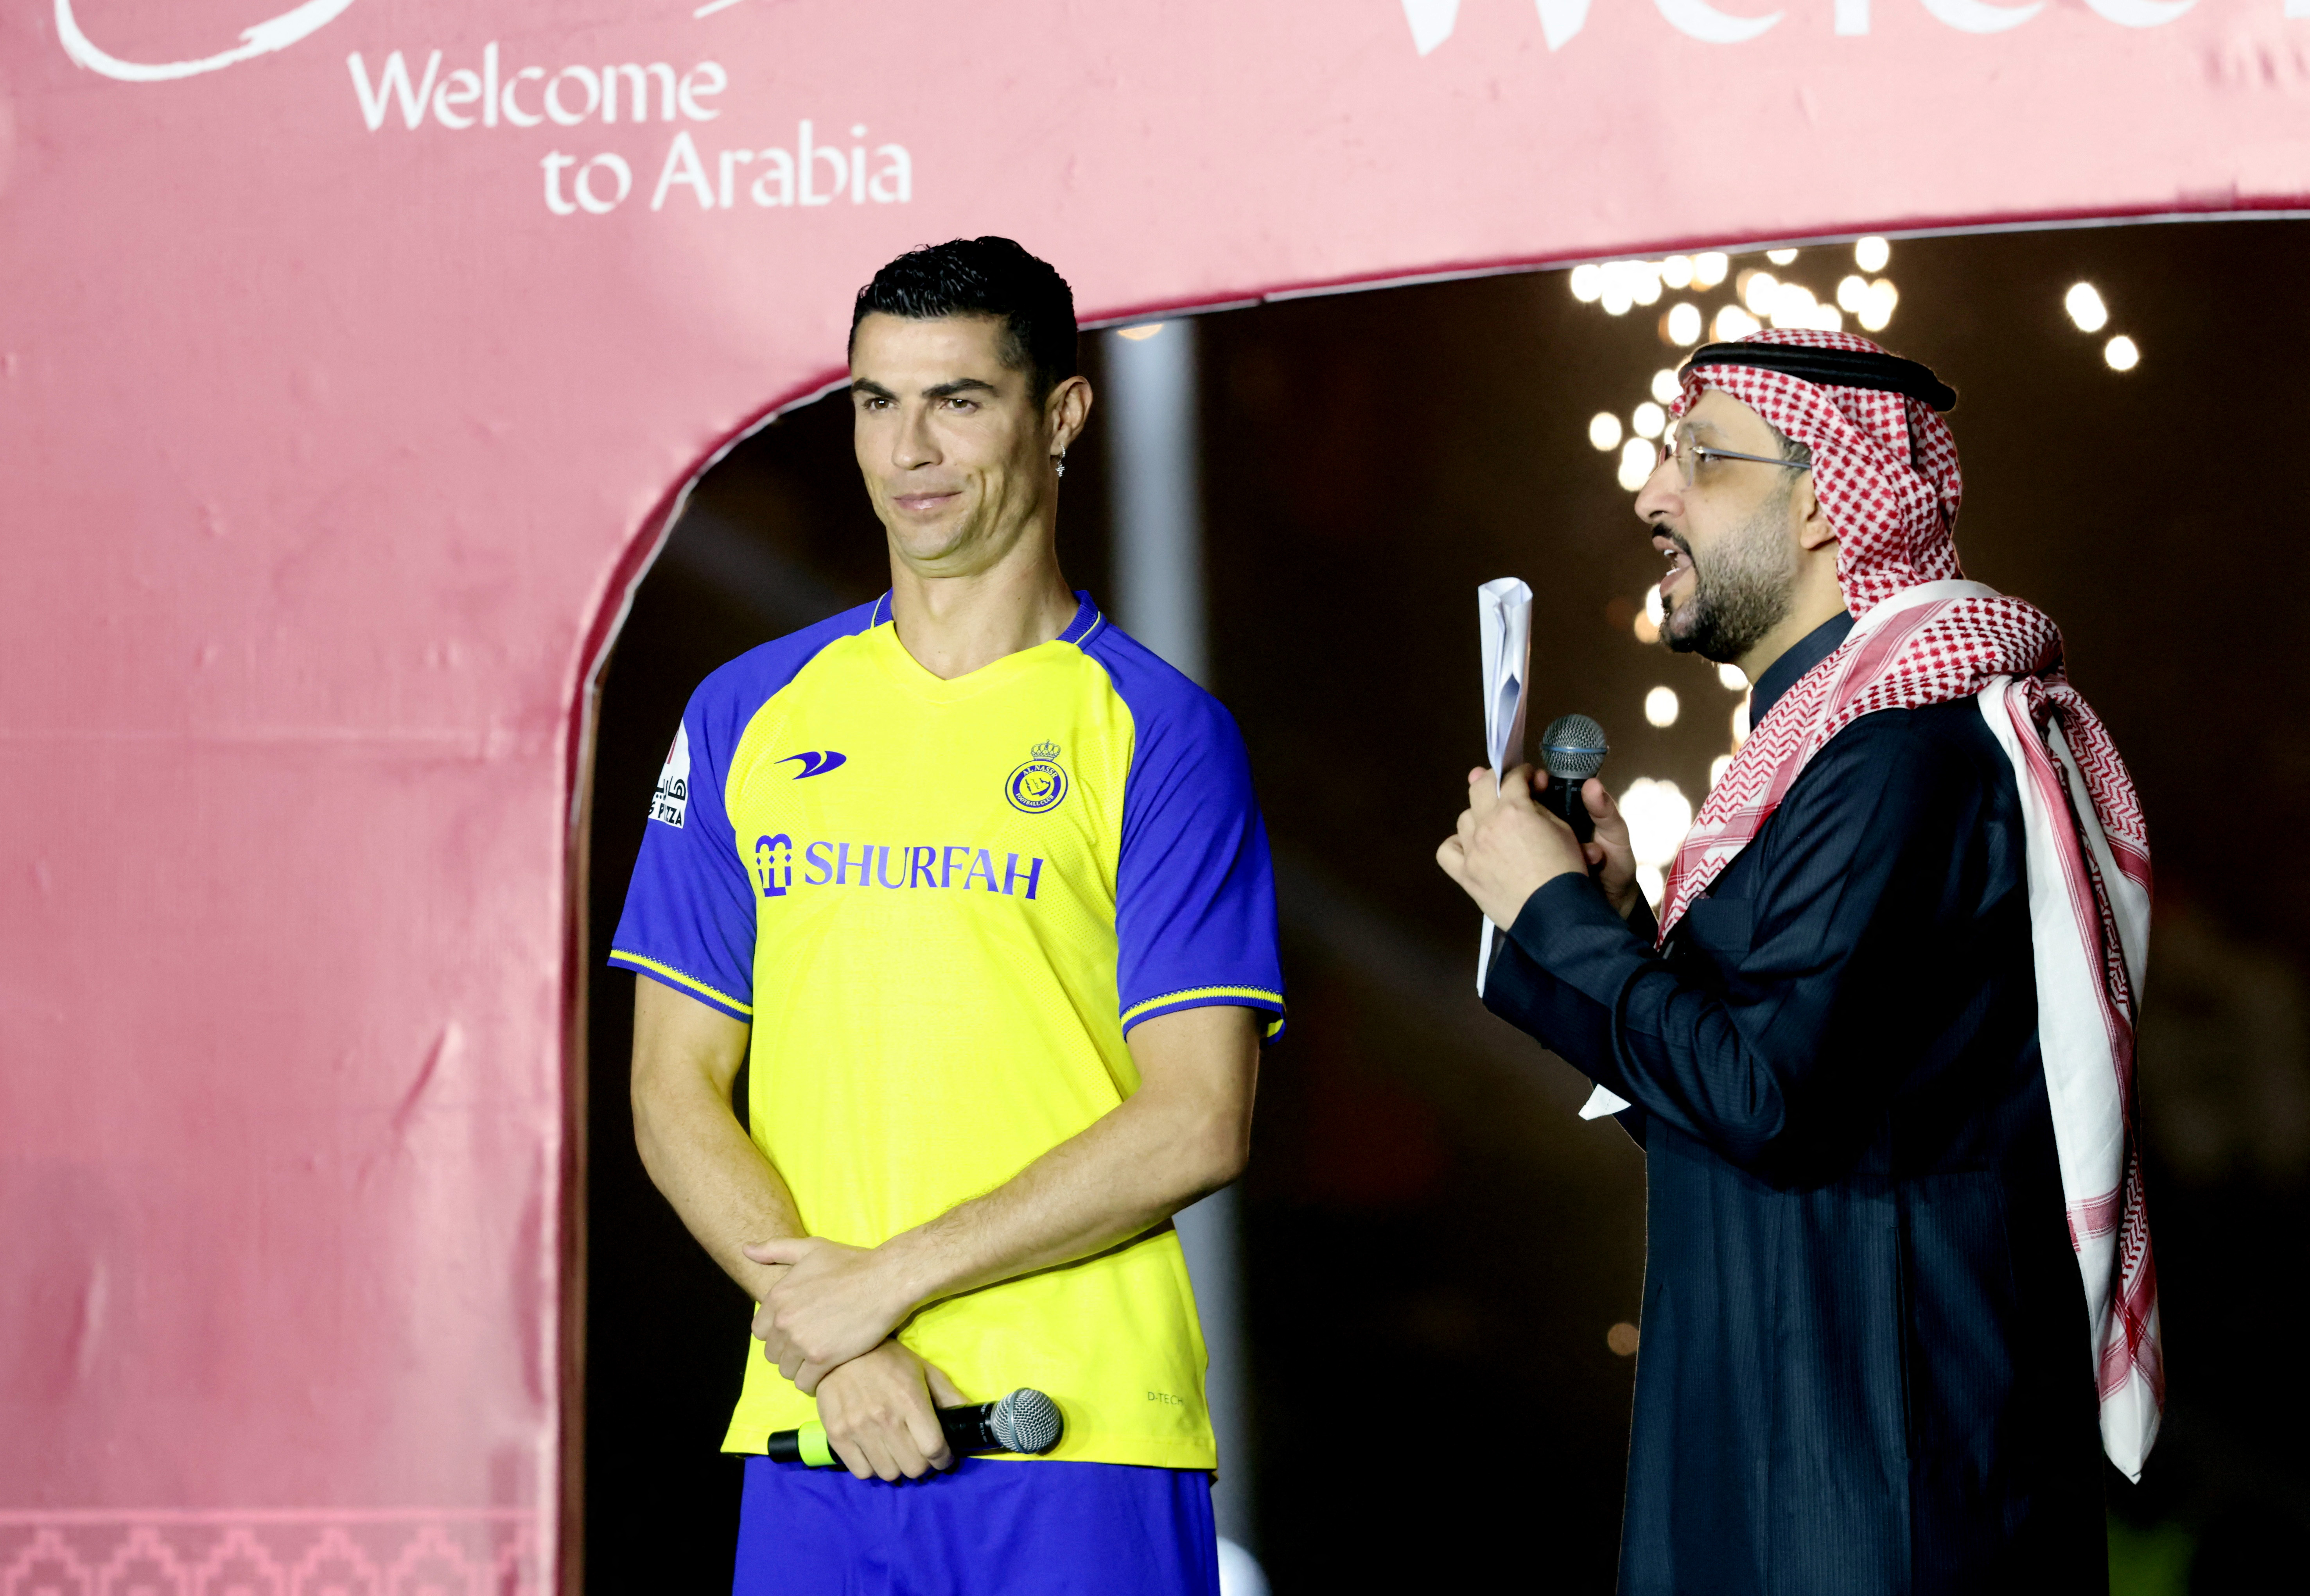 Ronaldo set to face Messi's PSG in Saudi Arabian debut